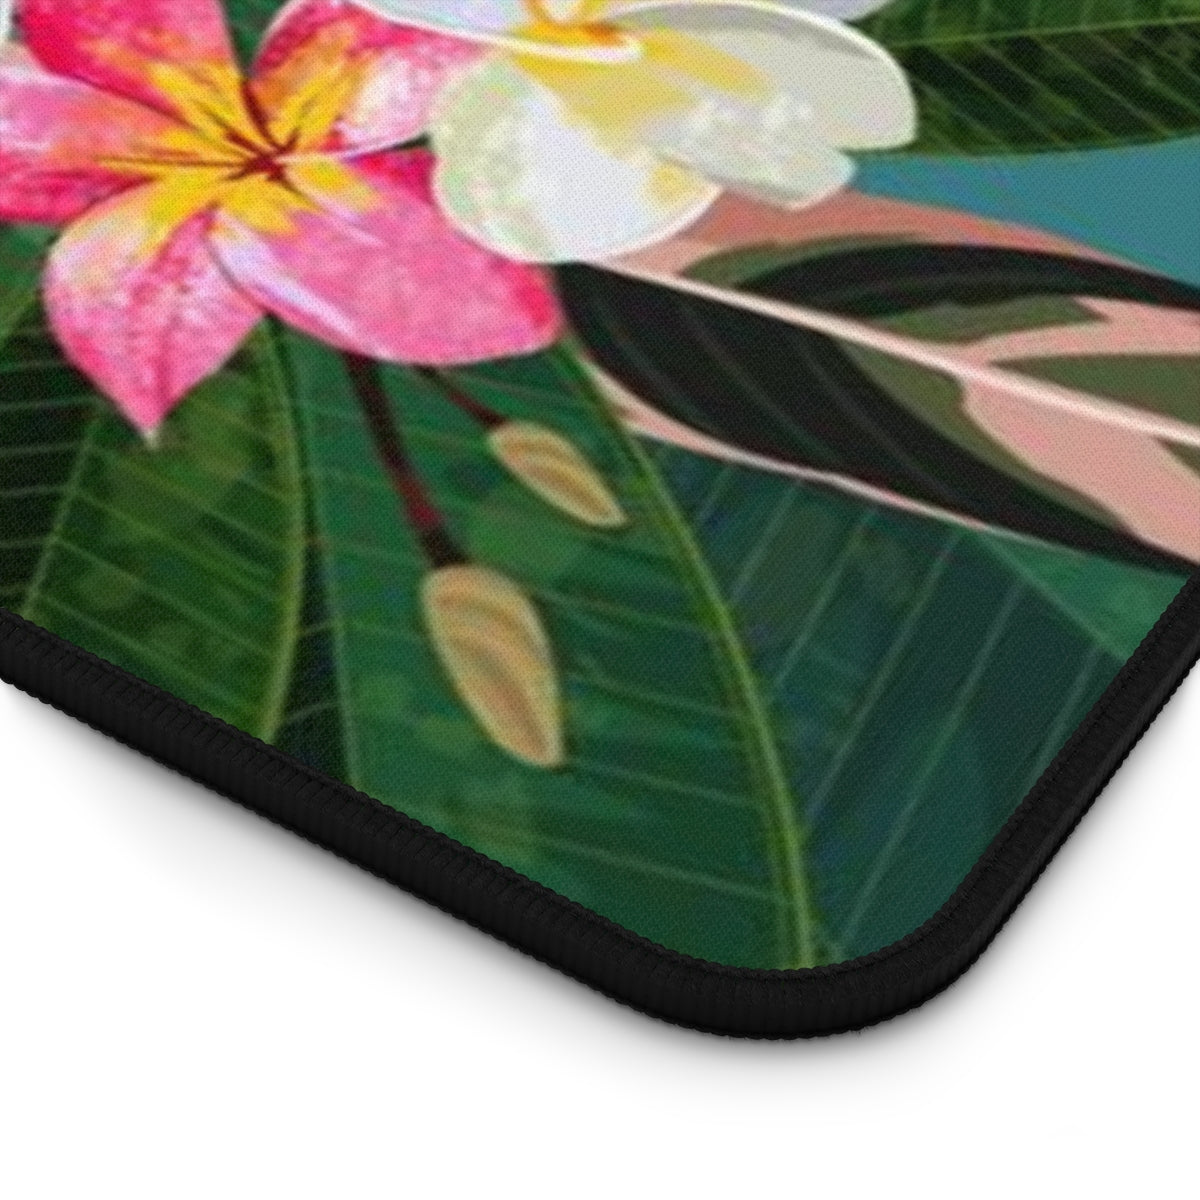 Plumeria Flowers Blue Guam CNMI Gaming Pad Desk Mat